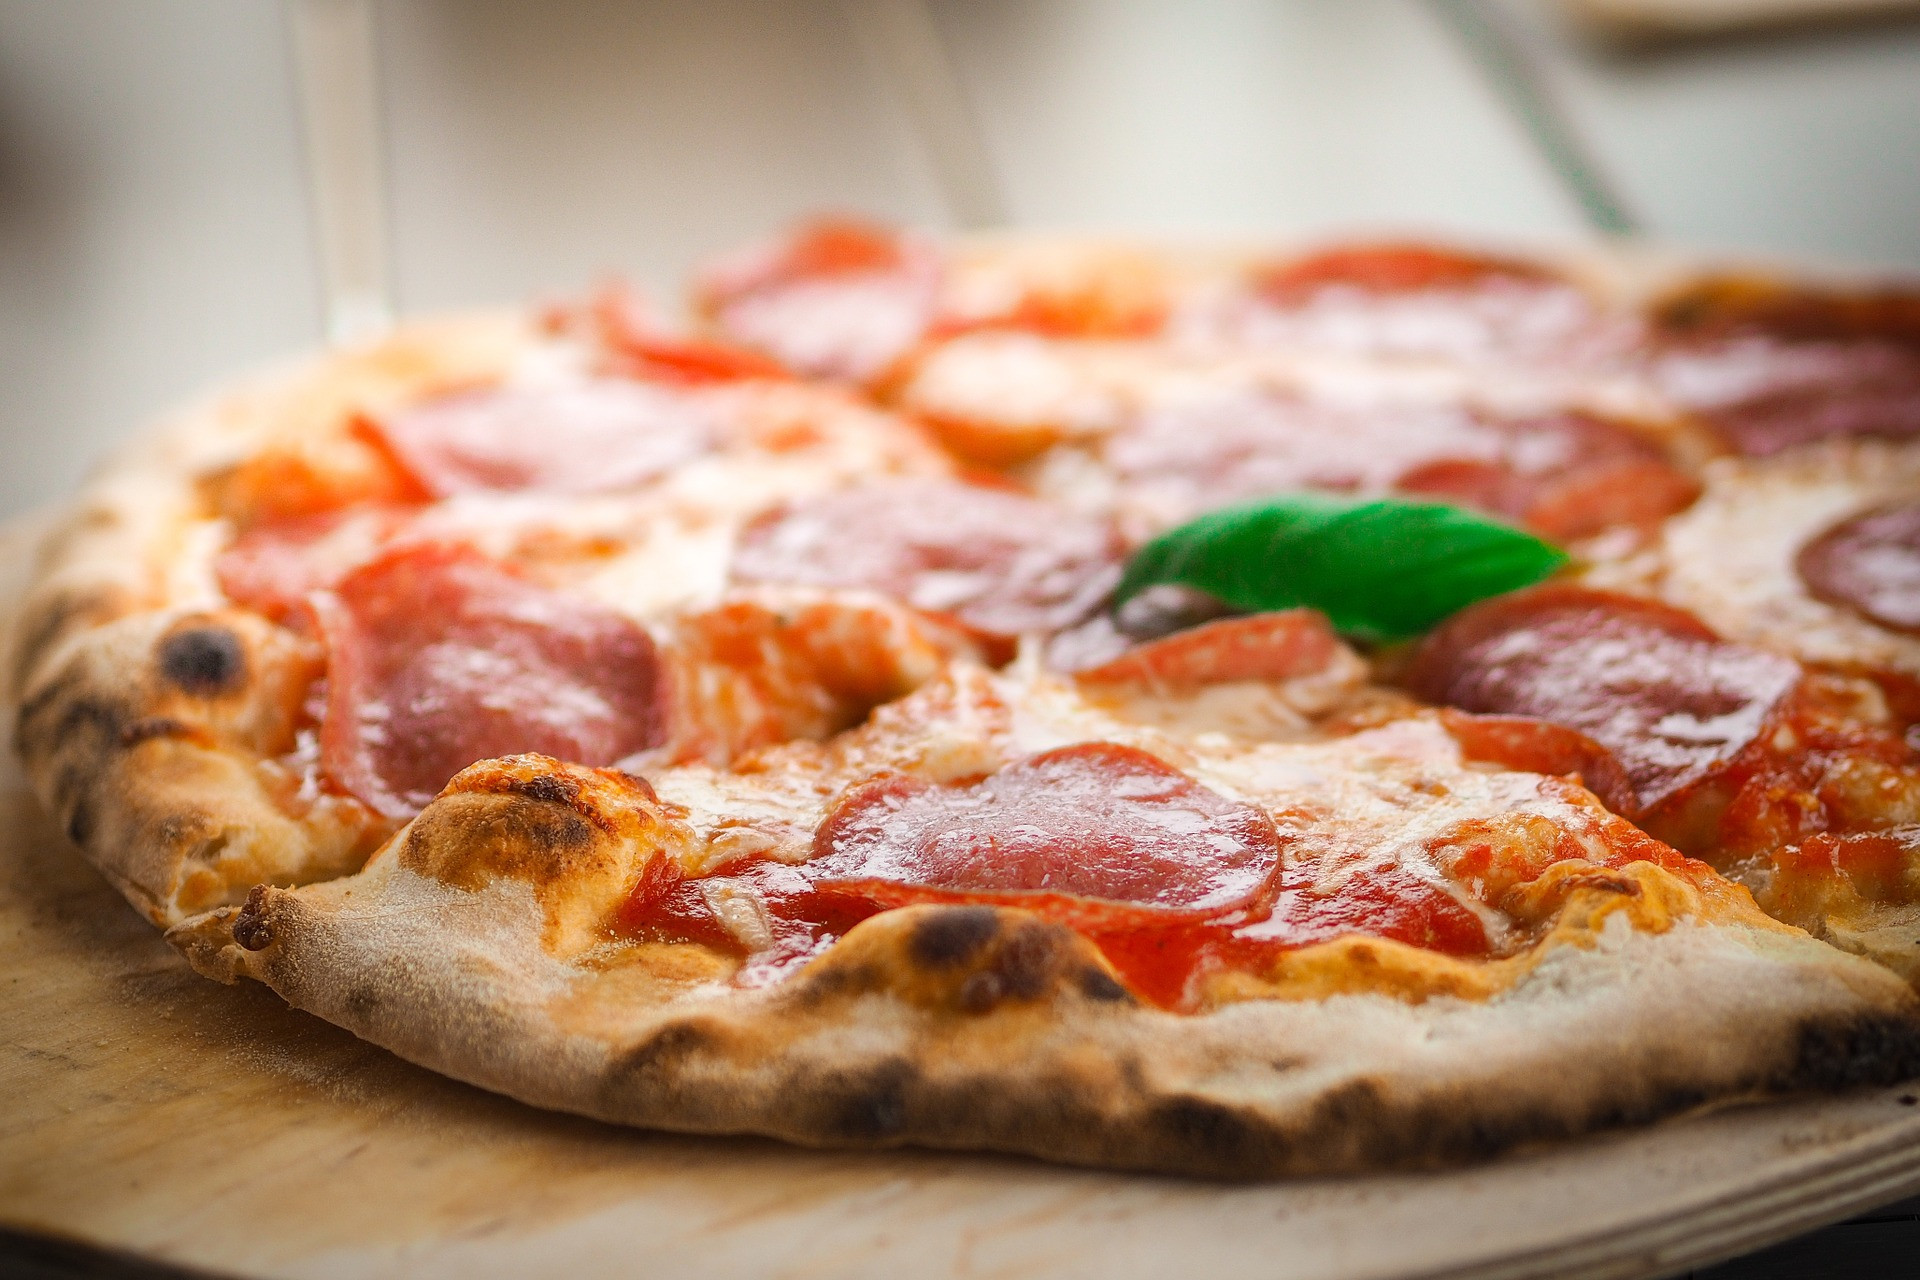 Pri výbere mrazenej pizze na grilovanie sa uistite, že má váš gril dostatočný priemer, aby sa do neho pizza vošla. Ak máte gril menší, môžete použiť napríklad pizza koláčiky.

Pri grilovaní pizze postupujte podľa schopností vášho grilu. Ak máte gril s funkciou rozmrazovania, môžete doň pizzu alebo pizza koláčiky rovno vložiť. "Optigrill má priamo program na mrazené potraviny. Rovno ich doň vložíte, on ich rozmrazí a ugriluje v správnej kvalite tak, ako požadujete, "vysvetľuje Dušan Holec zo spoločnosti Tefal.

V prípade, že váš gril spracovávať mrazené potraviny nedokáže, musíte pizzu najprv dobre rozmraziť. Môžete ju nechať dlhšiu dobu na izbovej teplote, alebo použiť rozmrazovací program v mikrovlnke. Potom pizzu preneste na kus alobalu a grilujte na strednom ohni, kým sa nevytvoria hnedé chrumkavé okraje a nerozpustí syr. Podľa typu a výrobcu pizze môže grilovanie trvať aj 20 minút a dlhšie. Hotovú pizzu preneste obracačkou na tanier. Počkajte päť minút a môžete podávať.